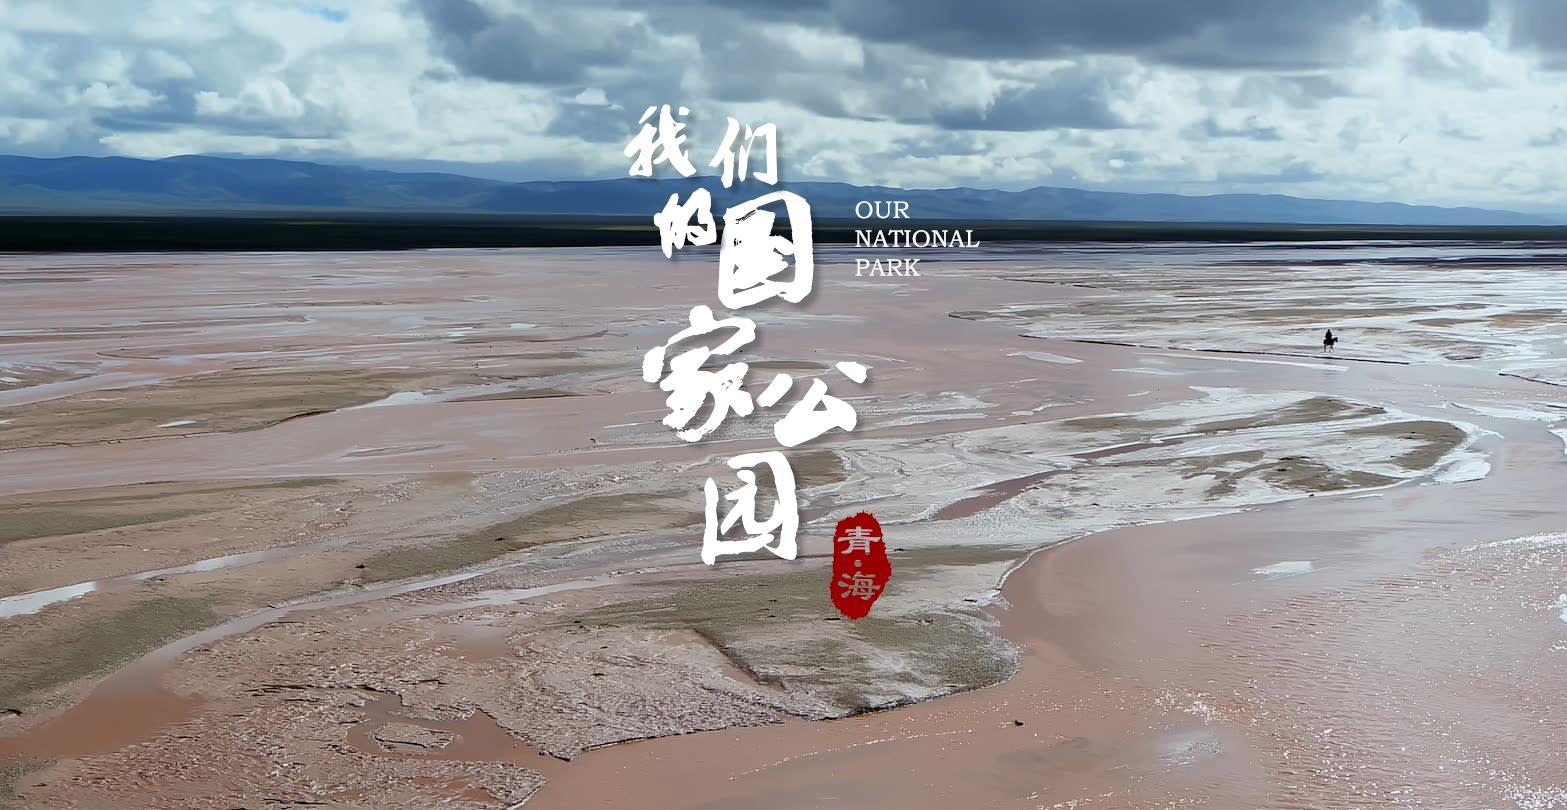 《青海·我们的国家公园》第二集 冰河 宣传片